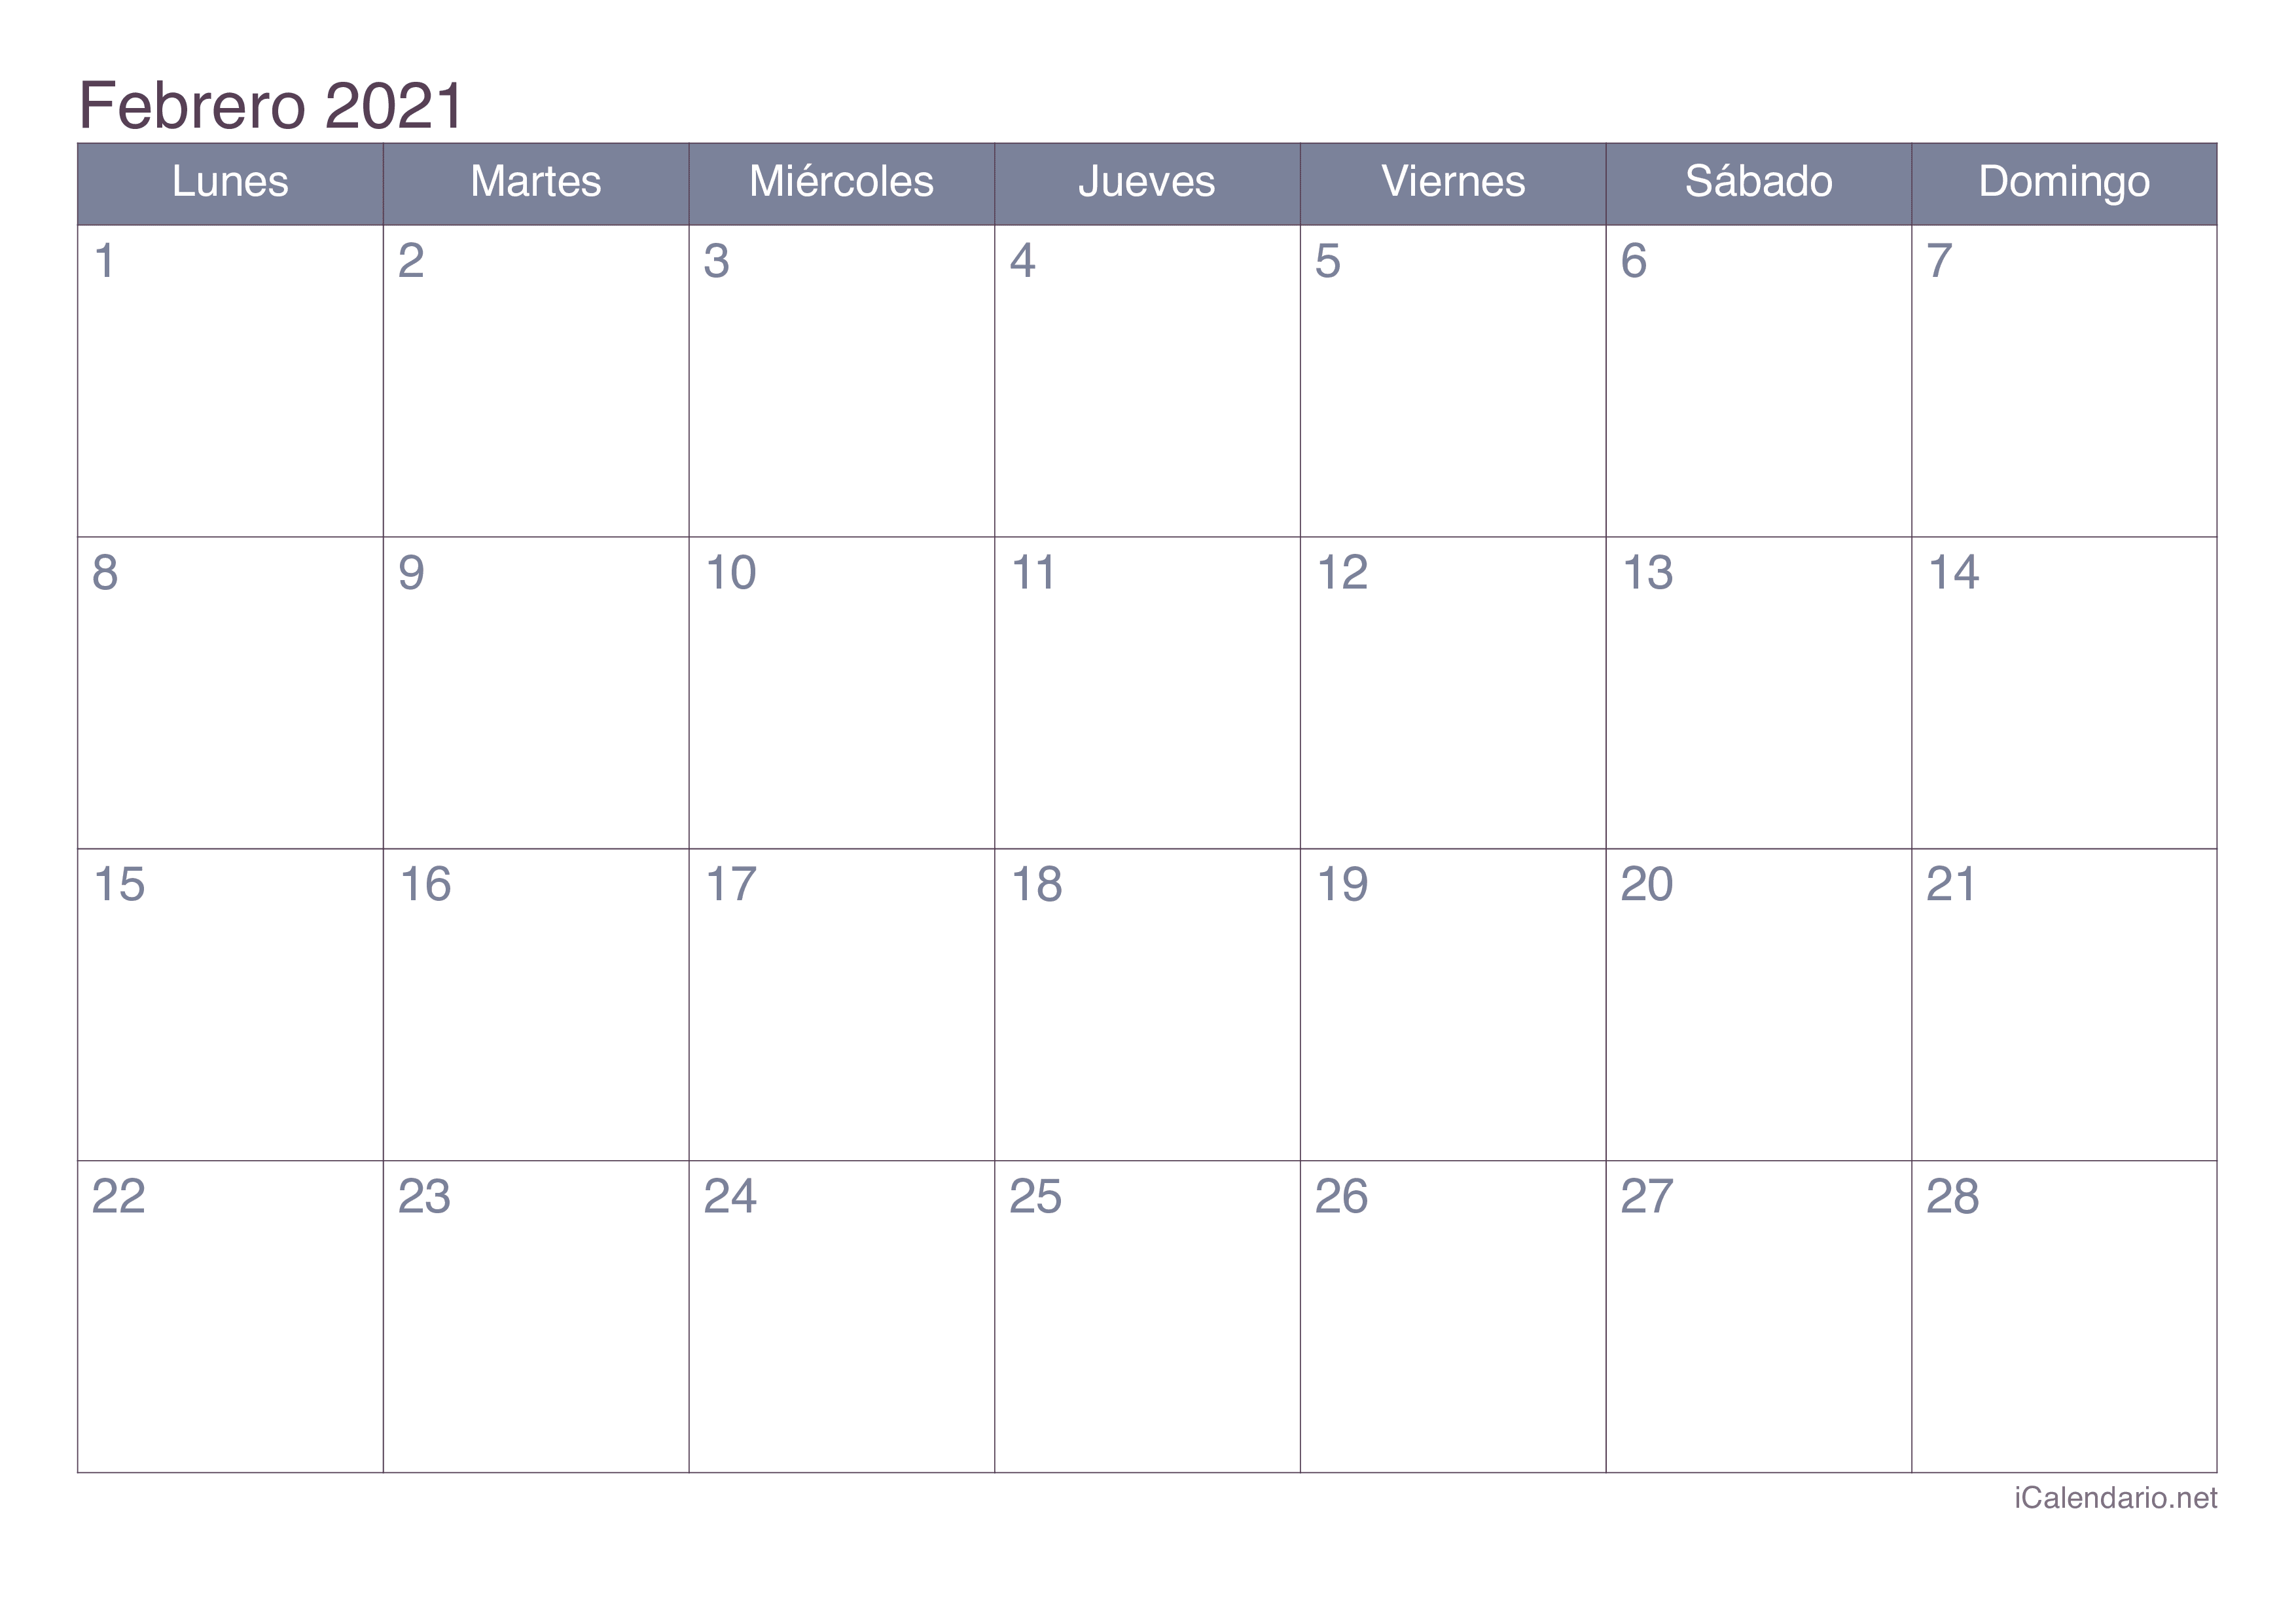 Calendario febrero 2021 para imprimir - iCalendario.net